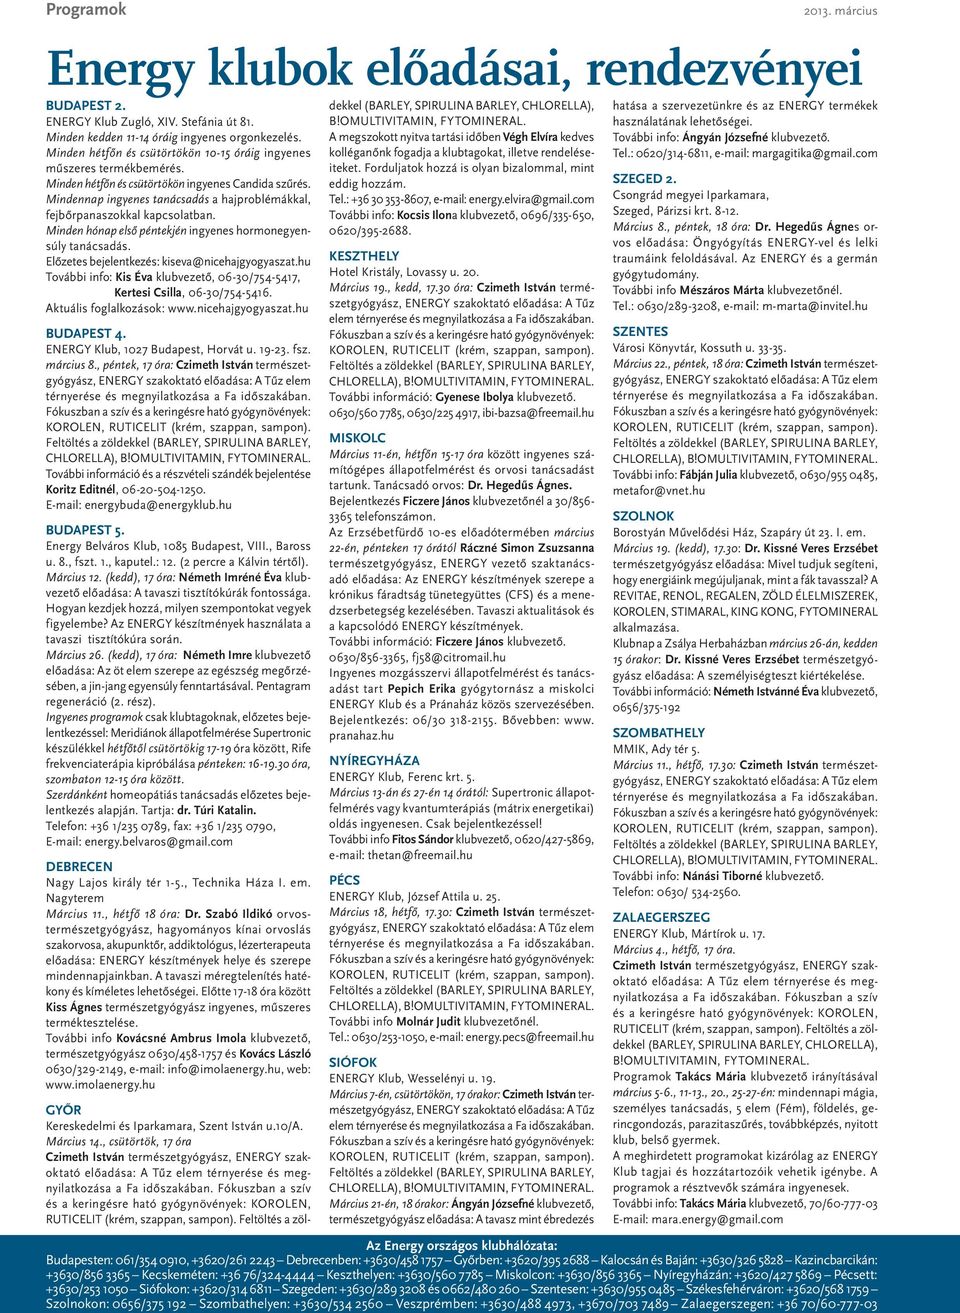 Pszichoszomatika: gyakorlati tanácsok - PDF Free Download